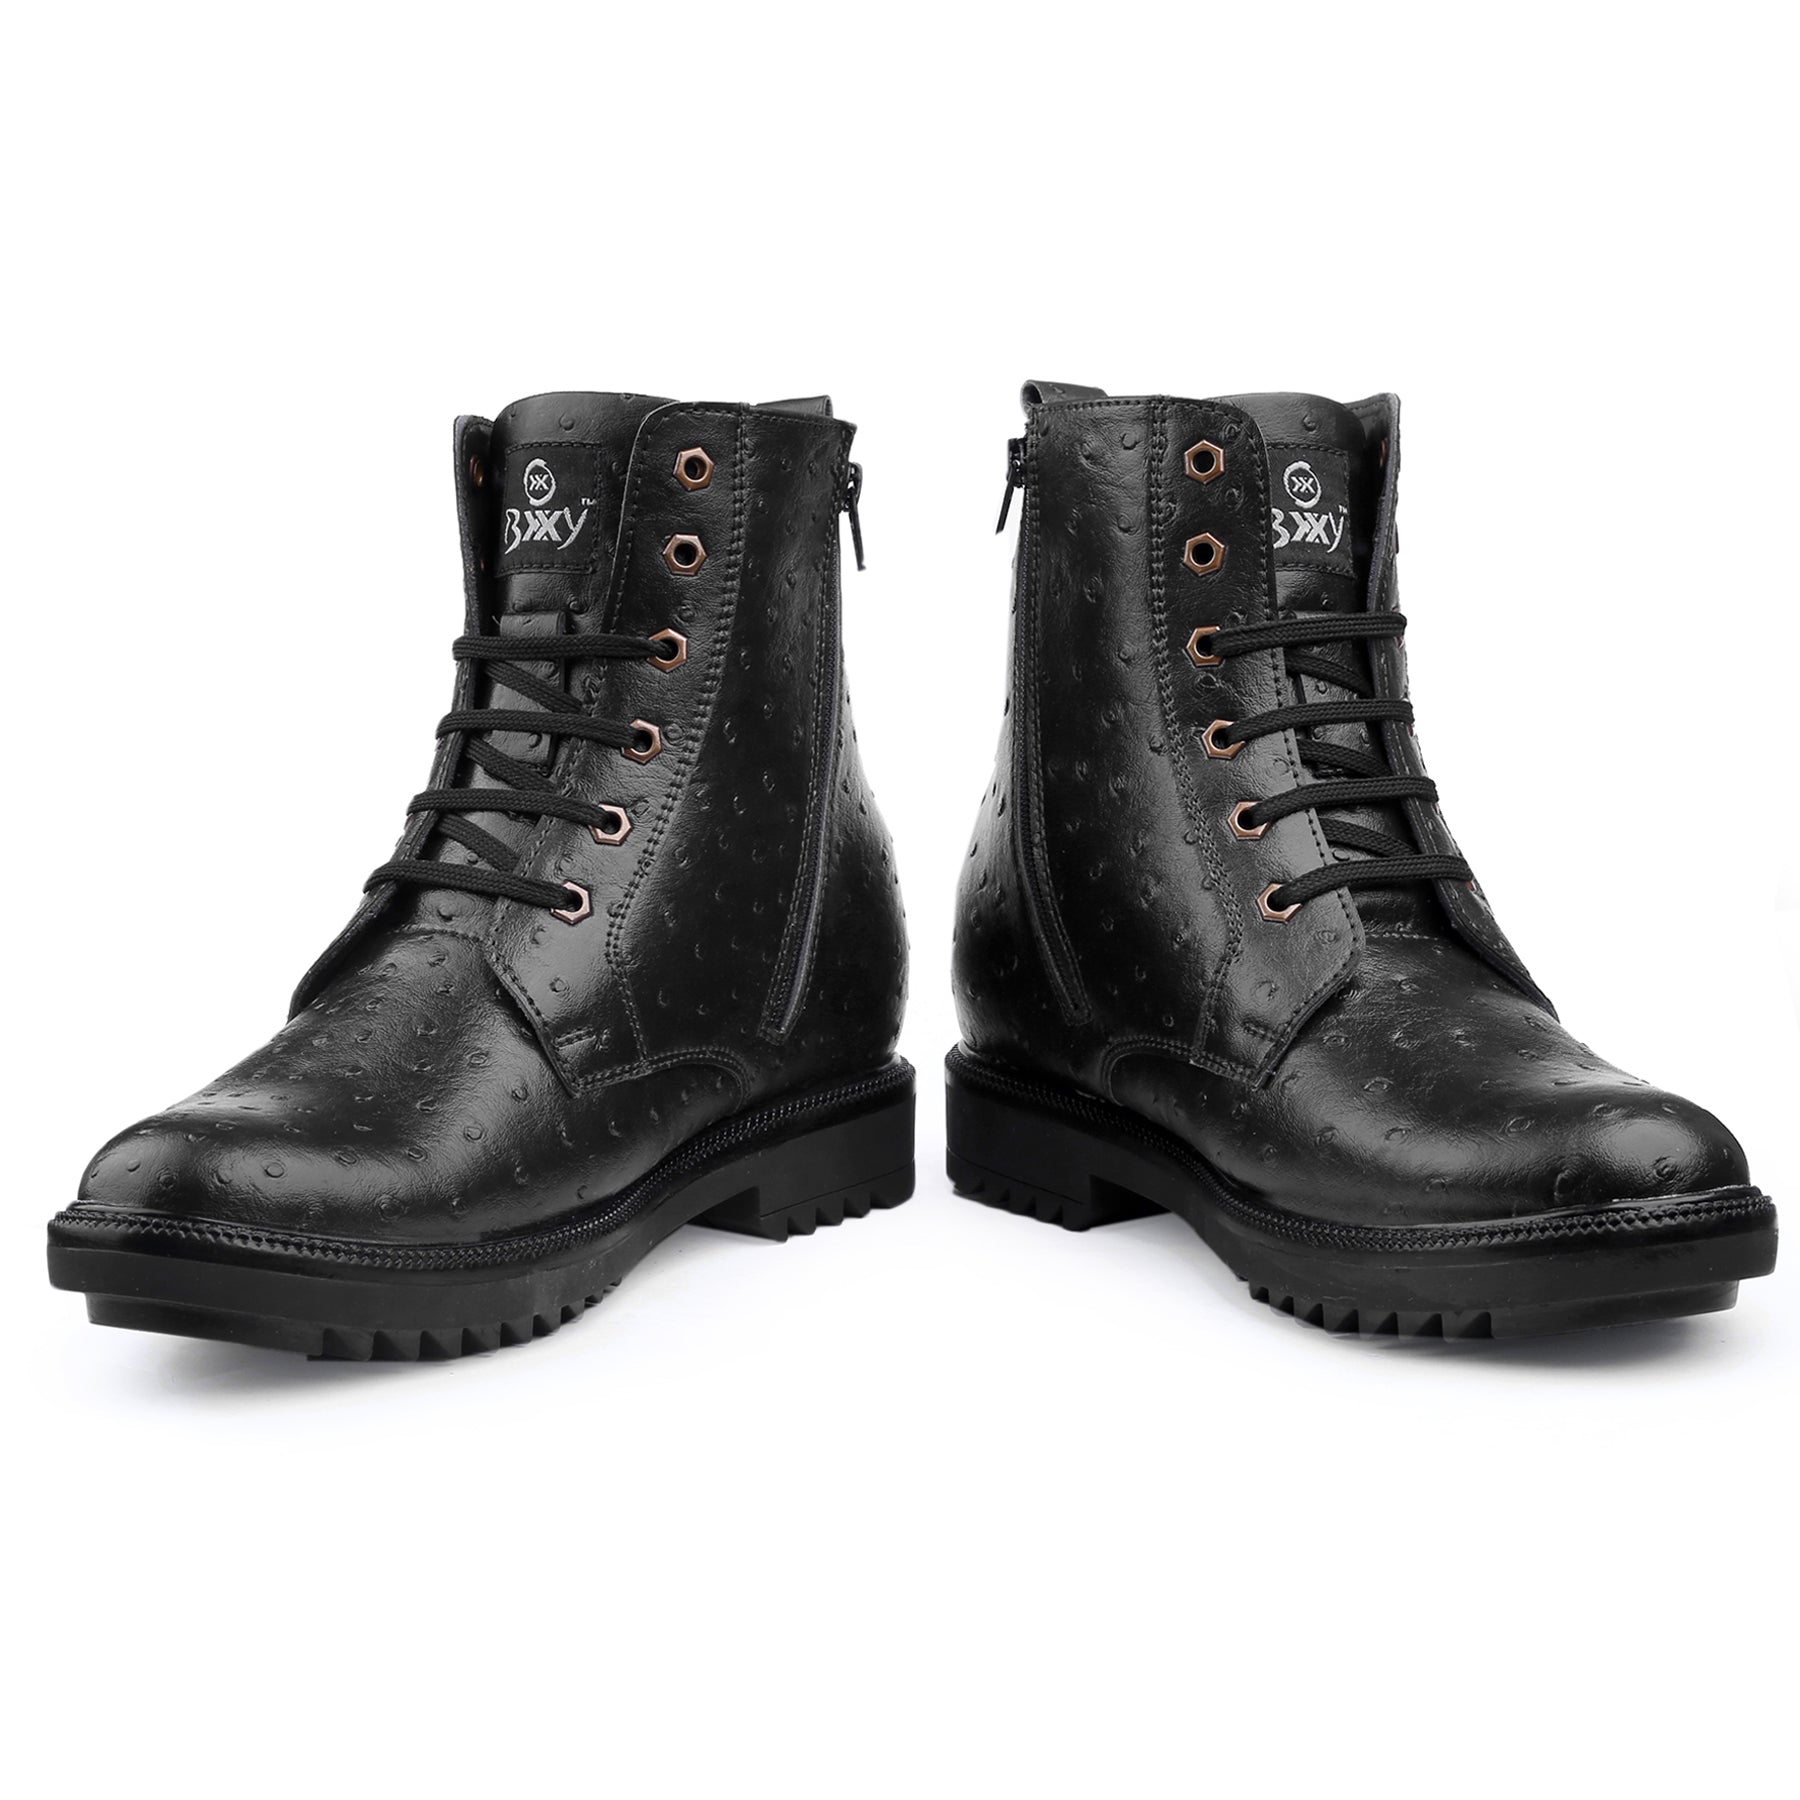 New Latest Men's Trendiest Boots – BxxyShoes